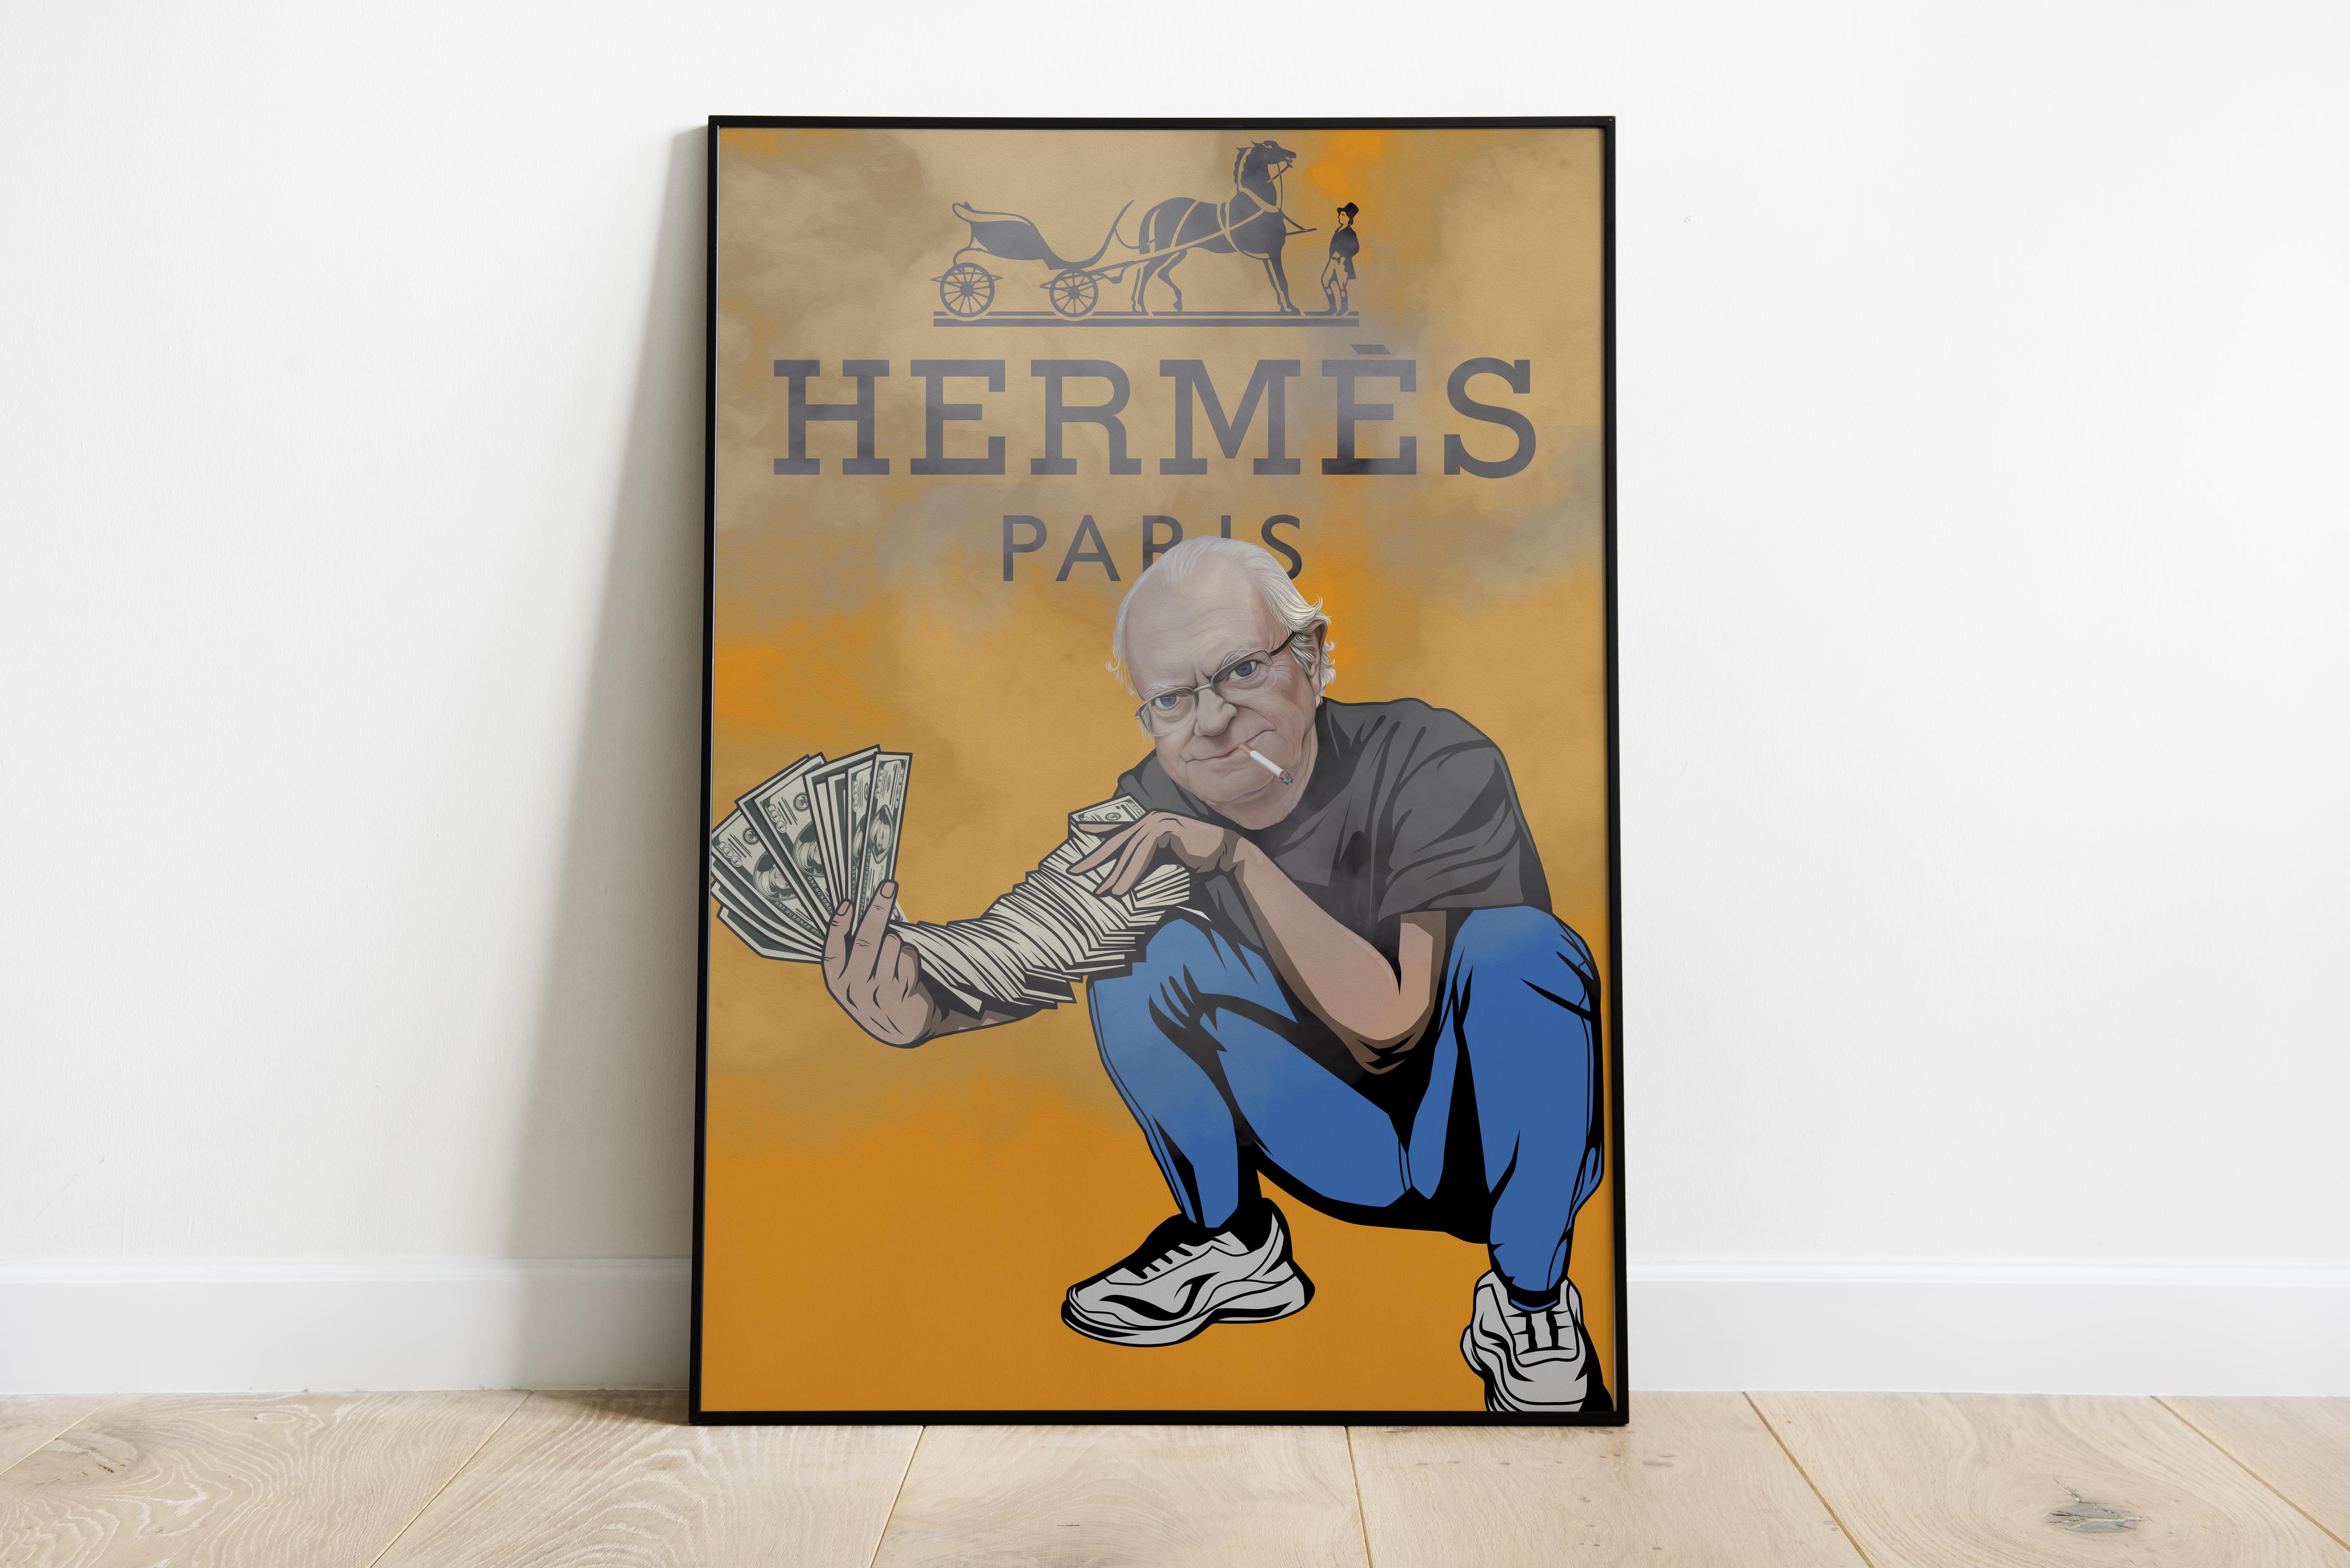 "Hermes"